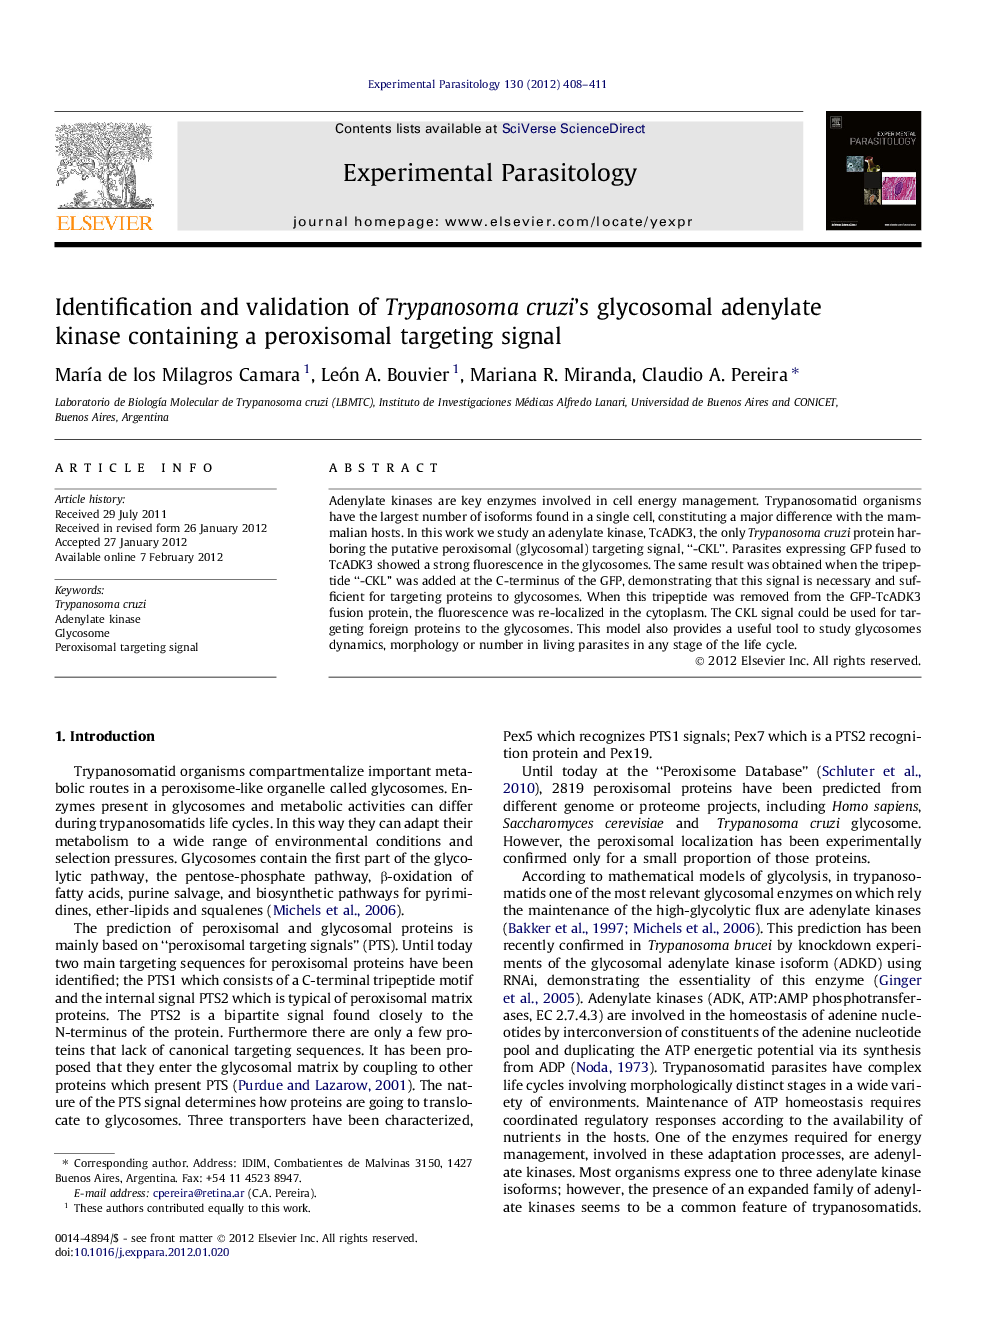 Identification and validation of Trypanosoma cruzi's glycosomal adenylate kinase containing a peroxisomal targeting signal